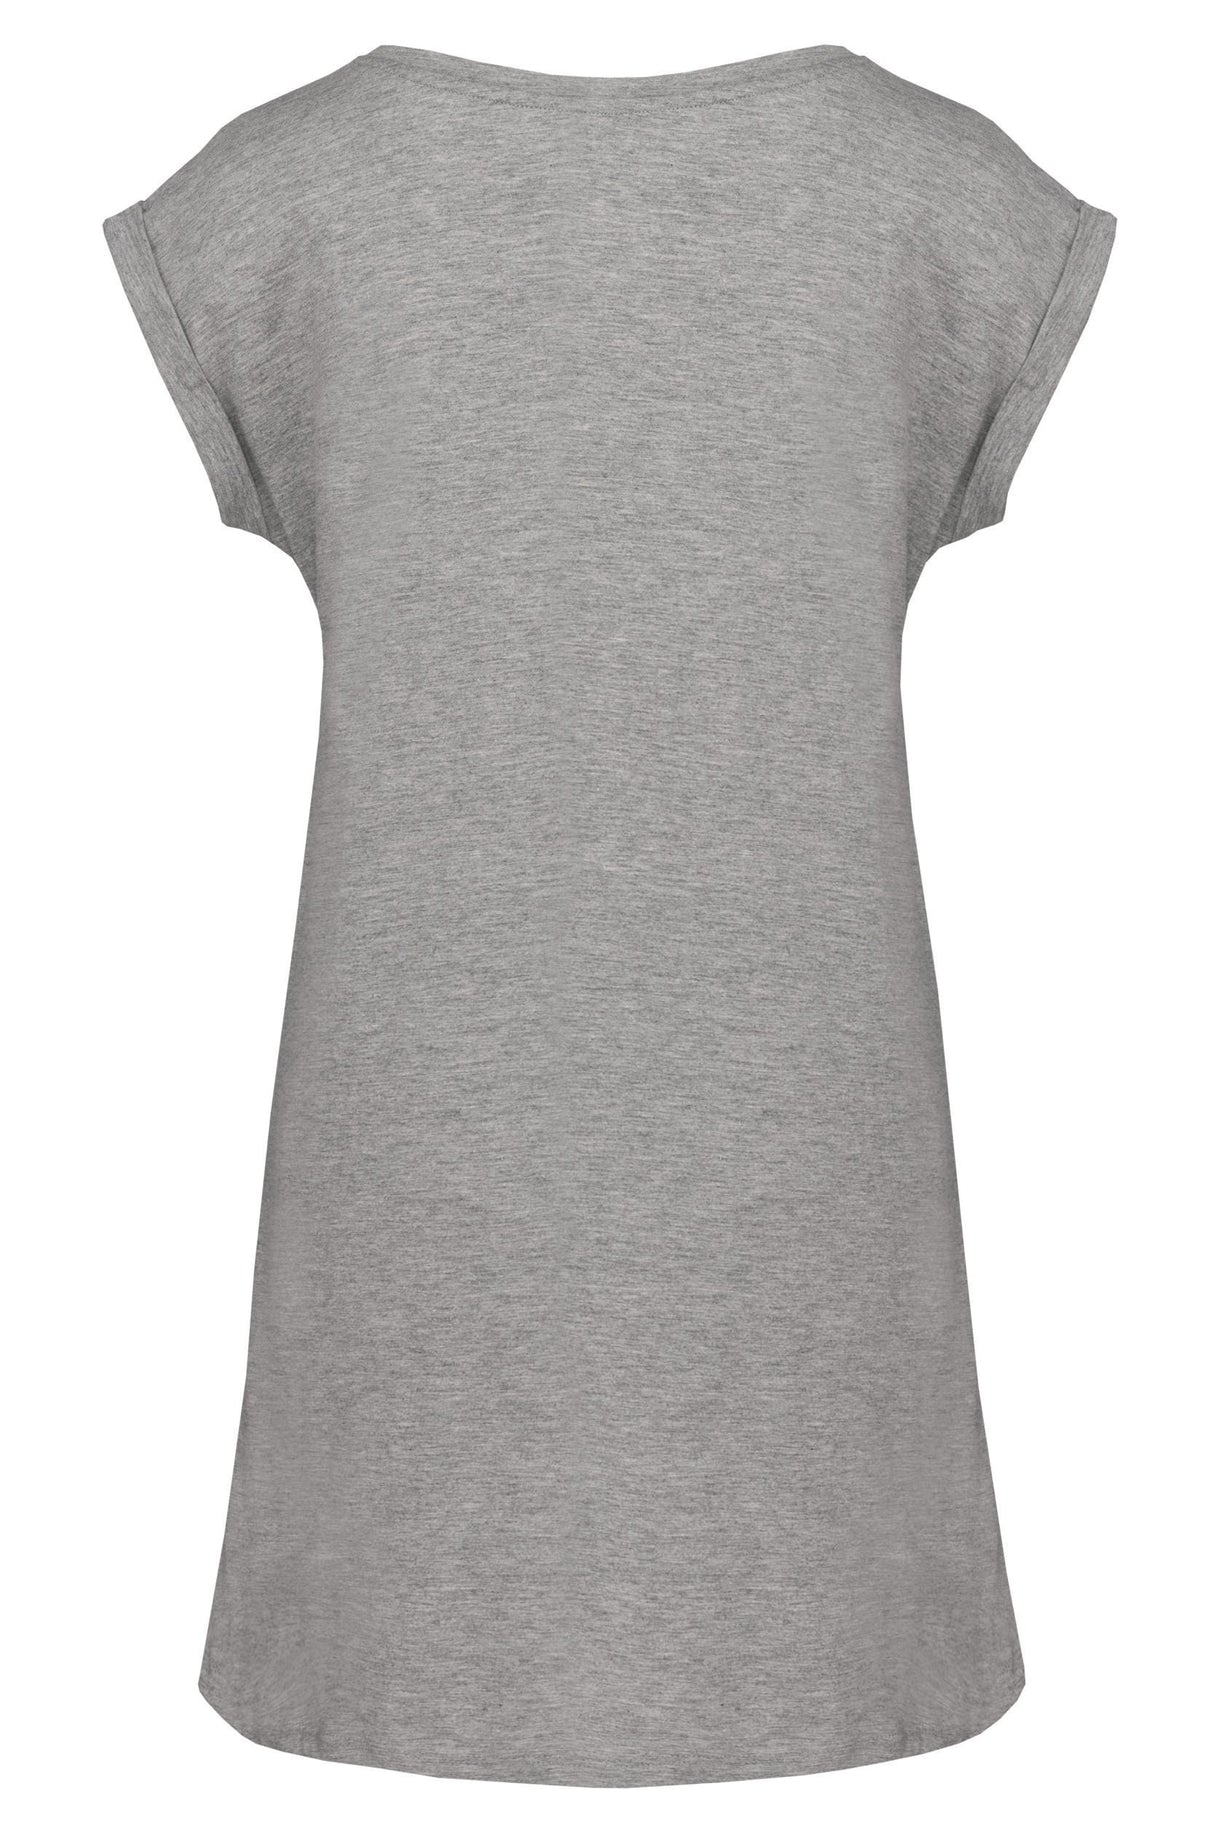 Kariban Ladies' Long T-Shirt